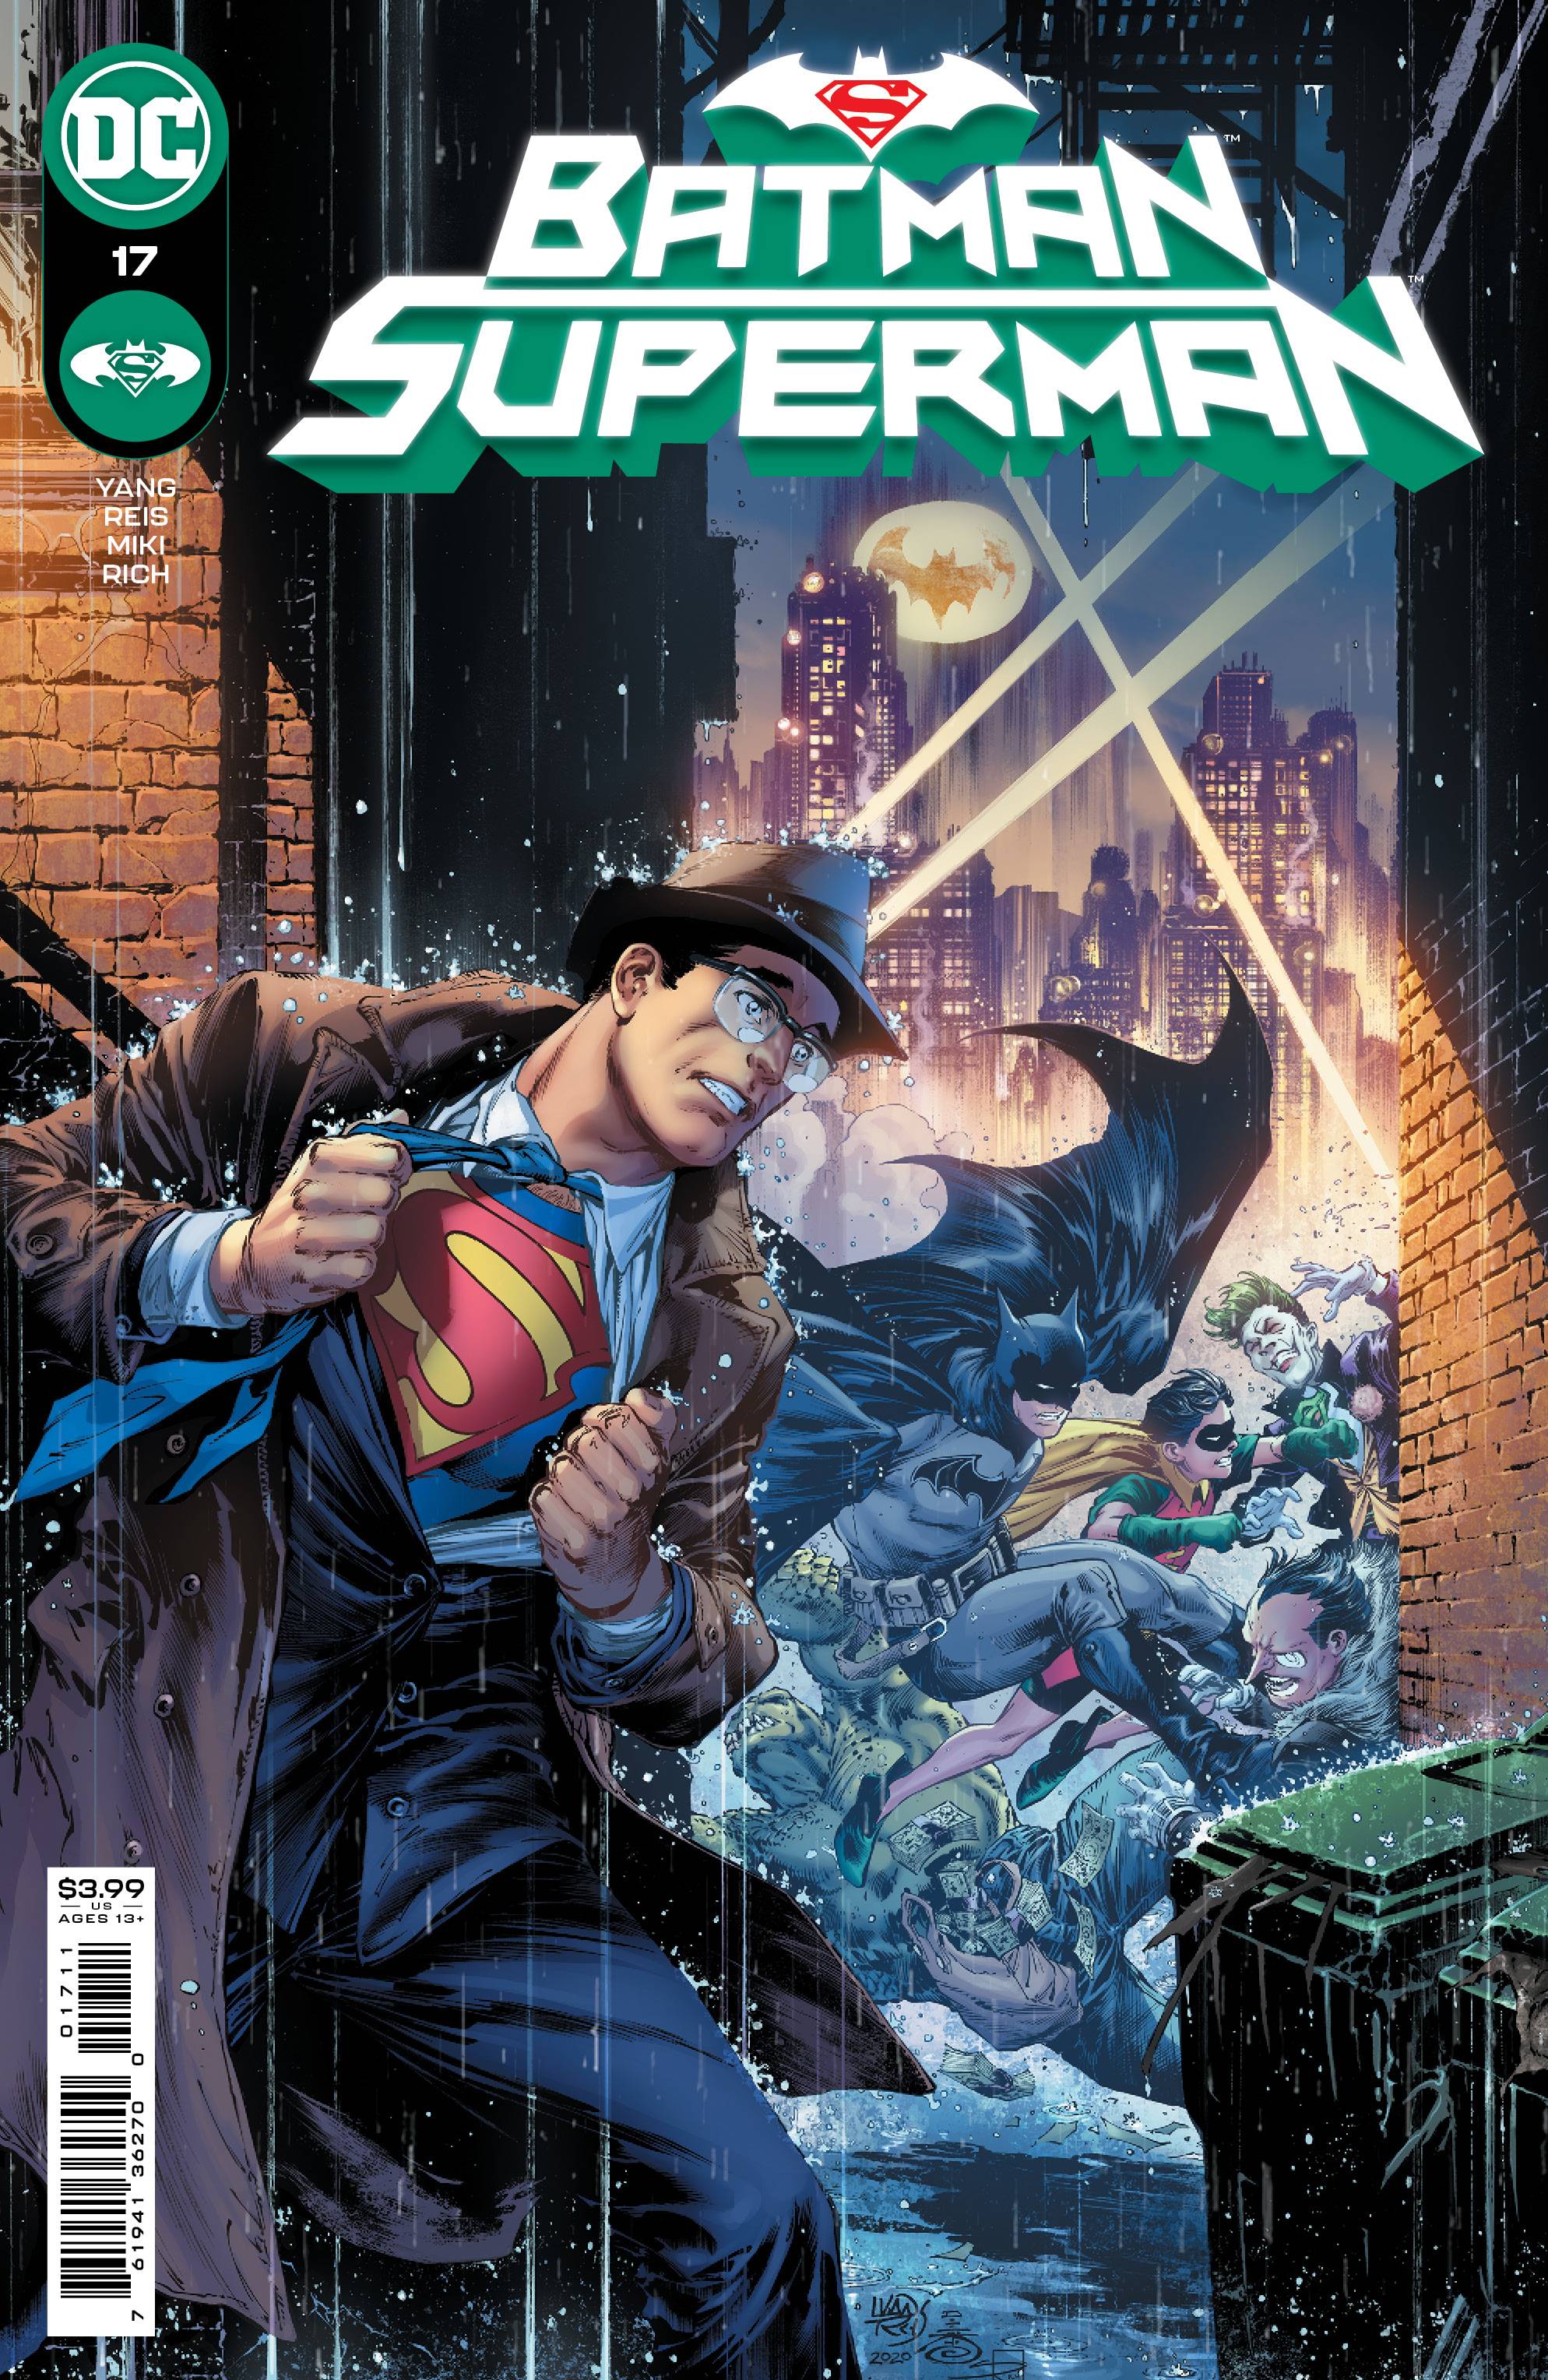 BATMAN SUPERMAN #17 CVR A REIS | L.A. Mood Comics and Games